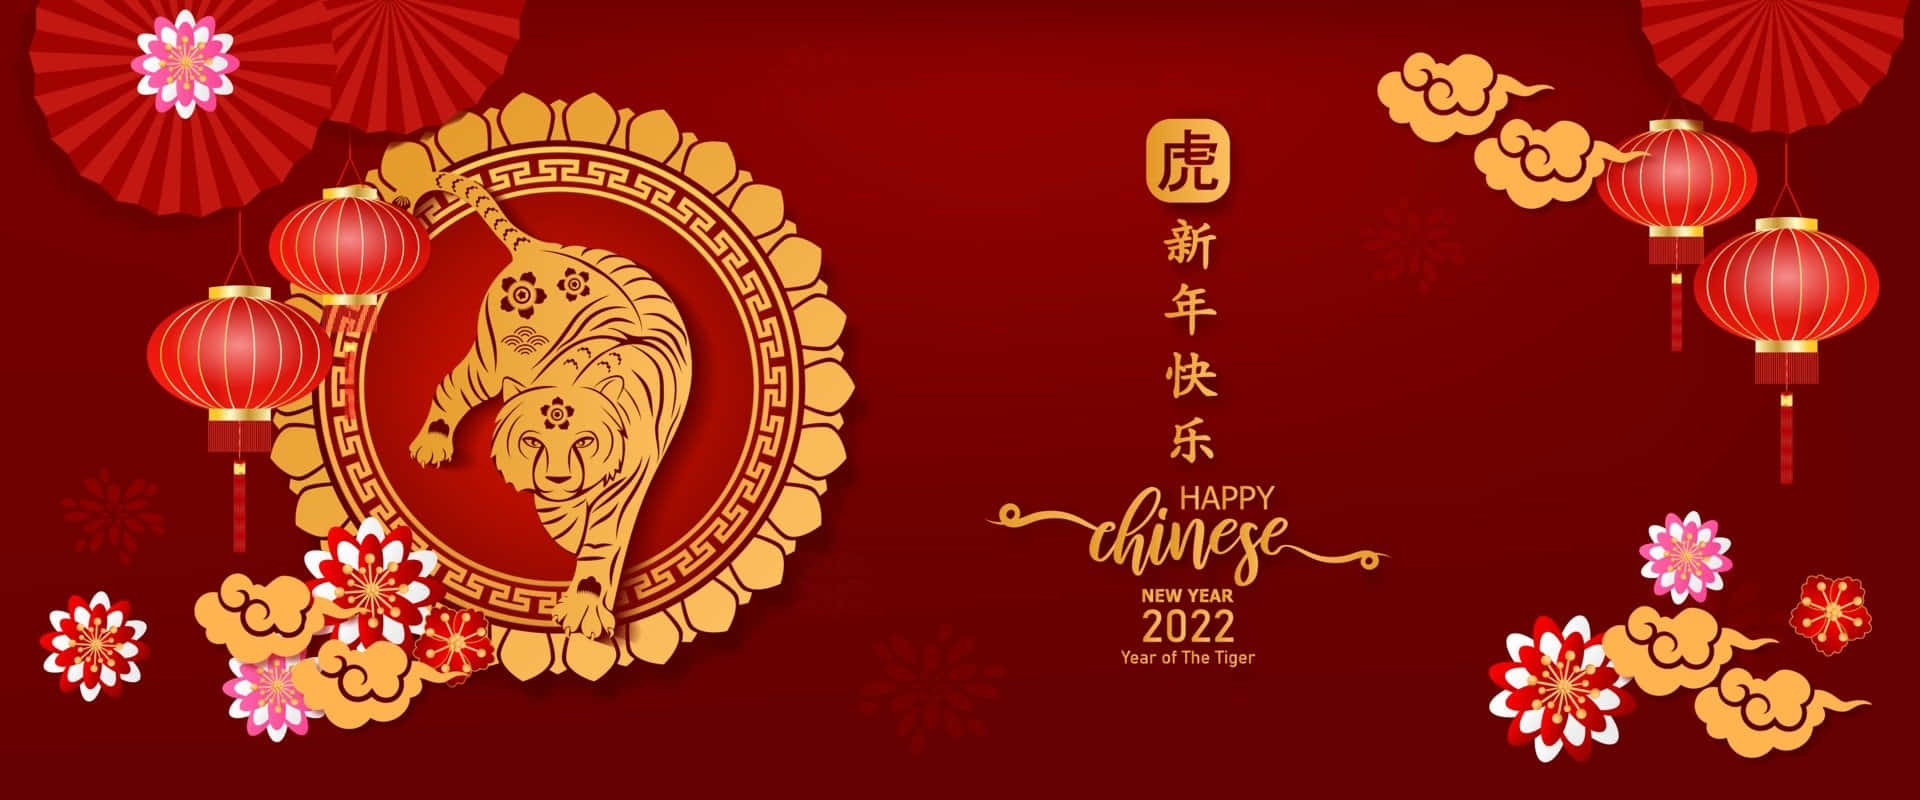 Chinesischesneujahr 2022 - Jahr Des Tiger-zodiacs Wallpaper